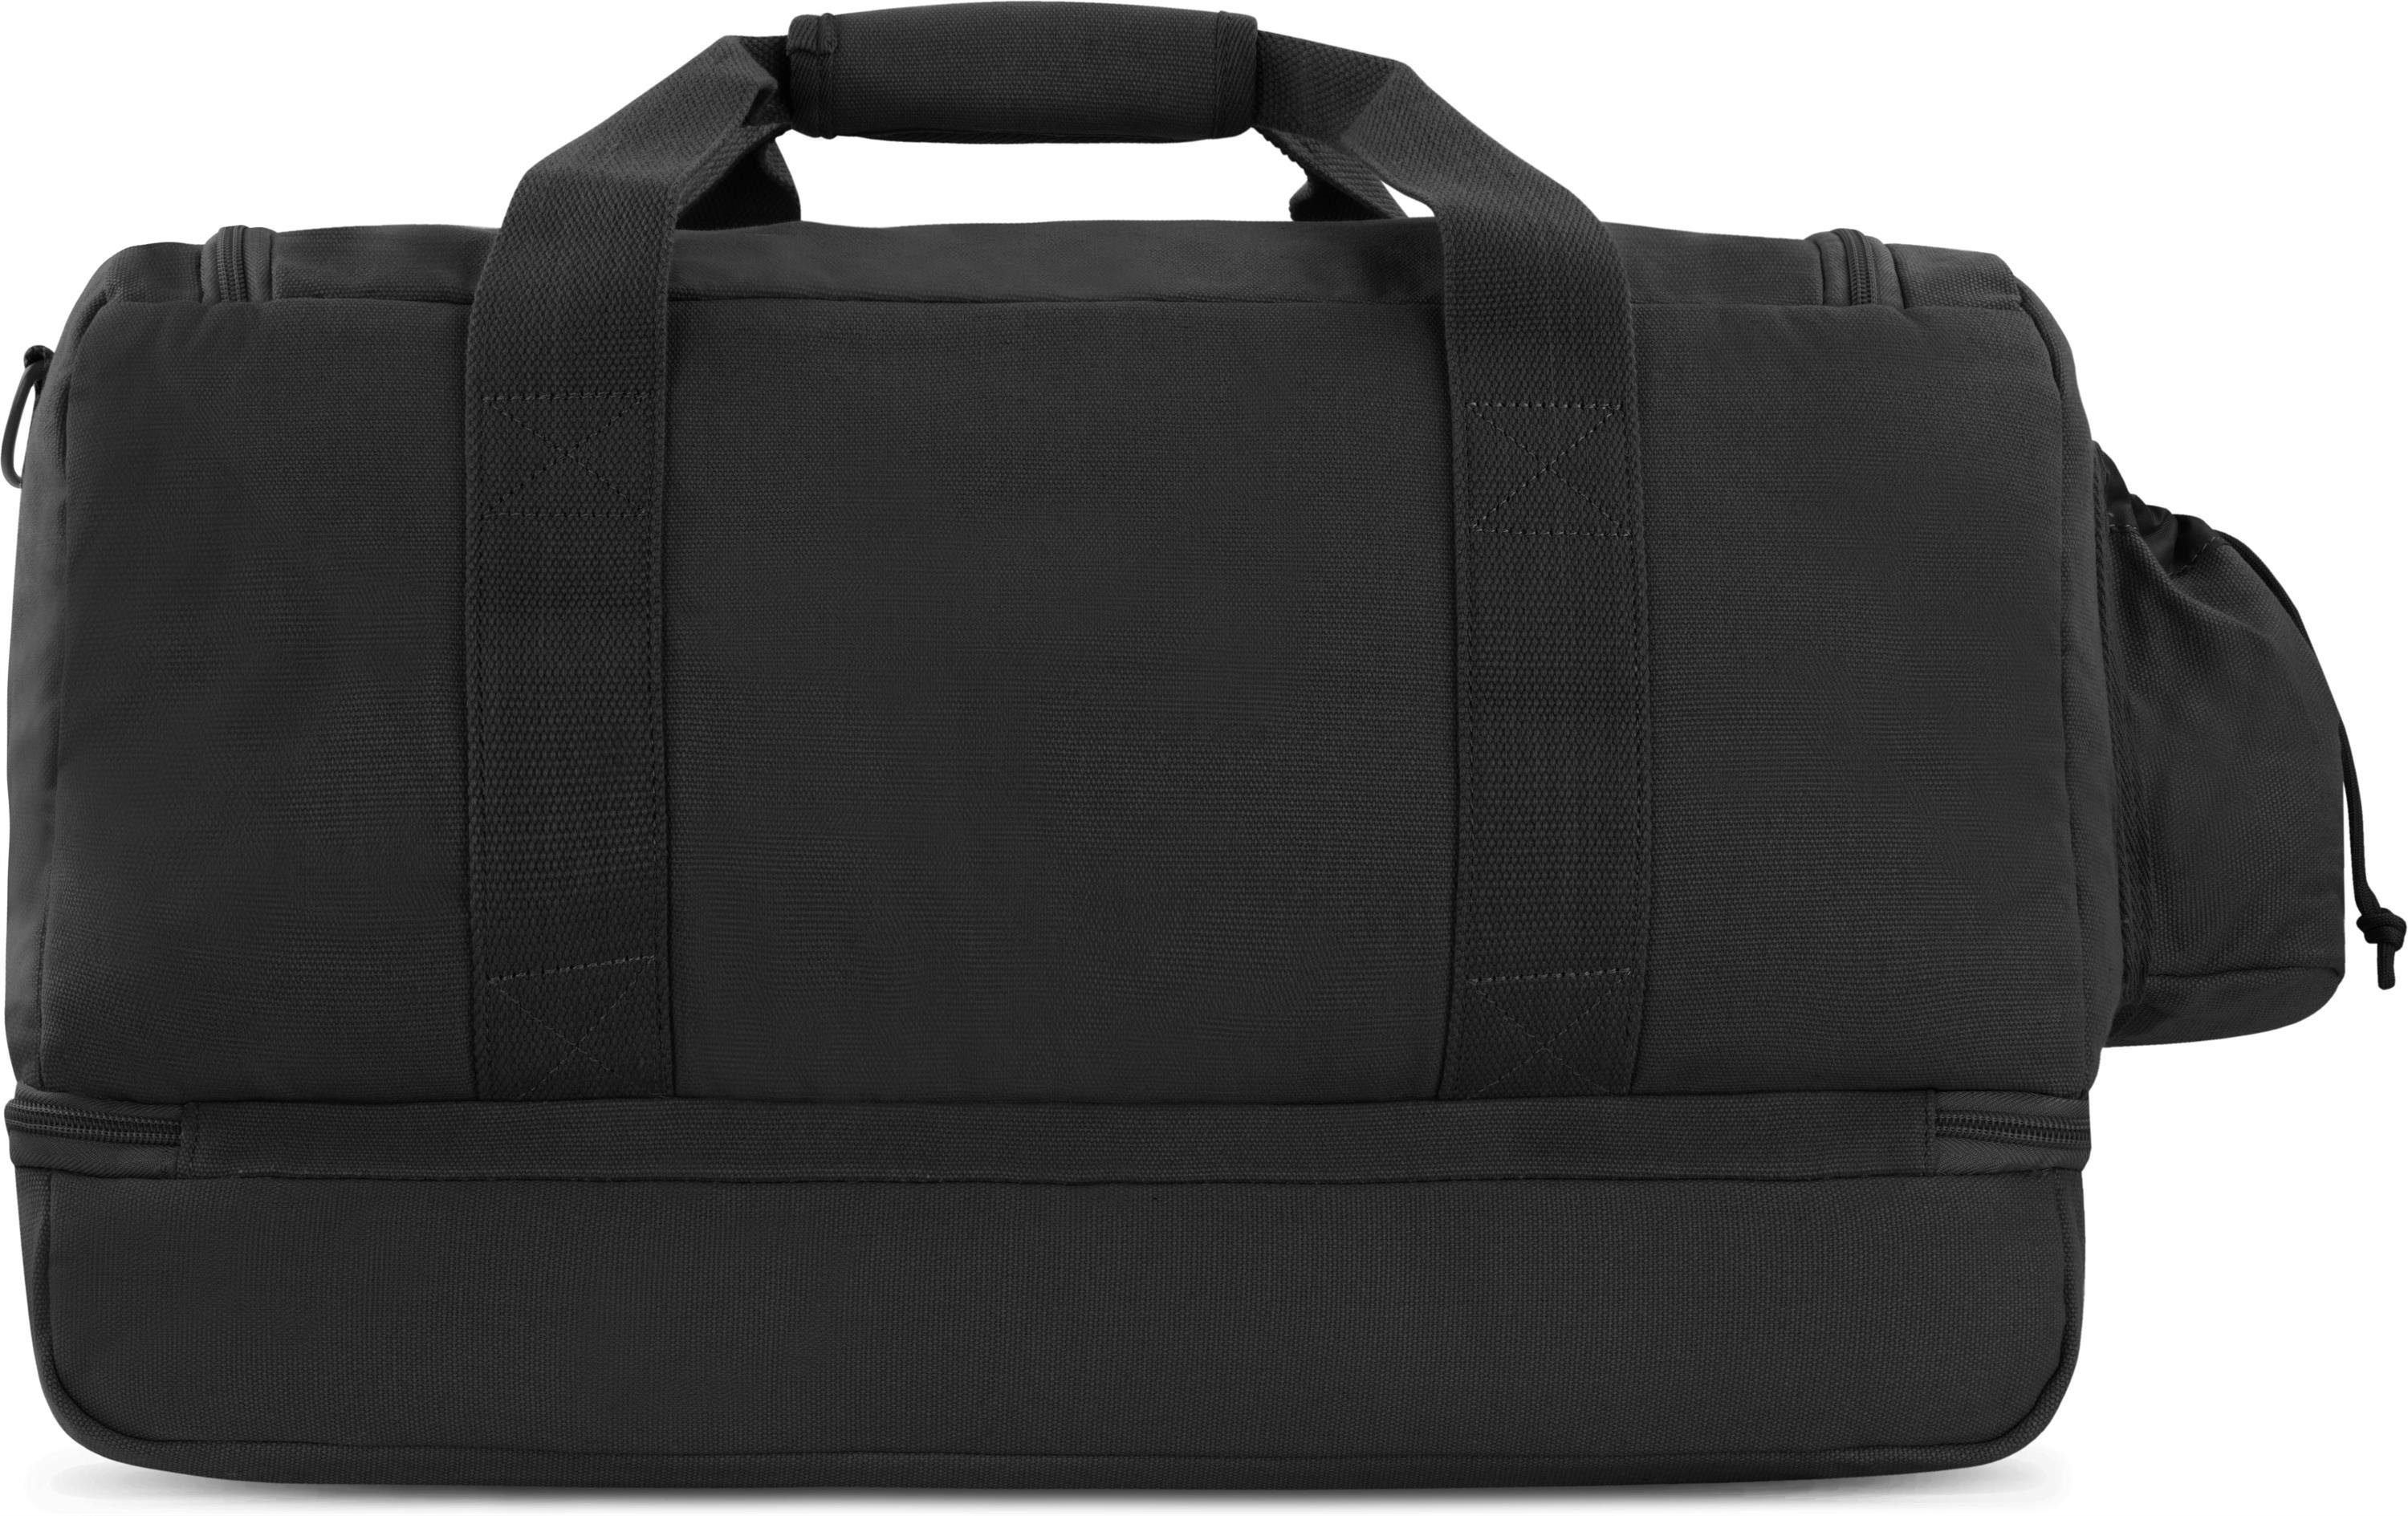 Schwarz Duffelbag Sporttasche Handgepäcktasche normani Umhängetasche Alert, Reisetasche Canvas-Tasche Sport- und Trainingstasche